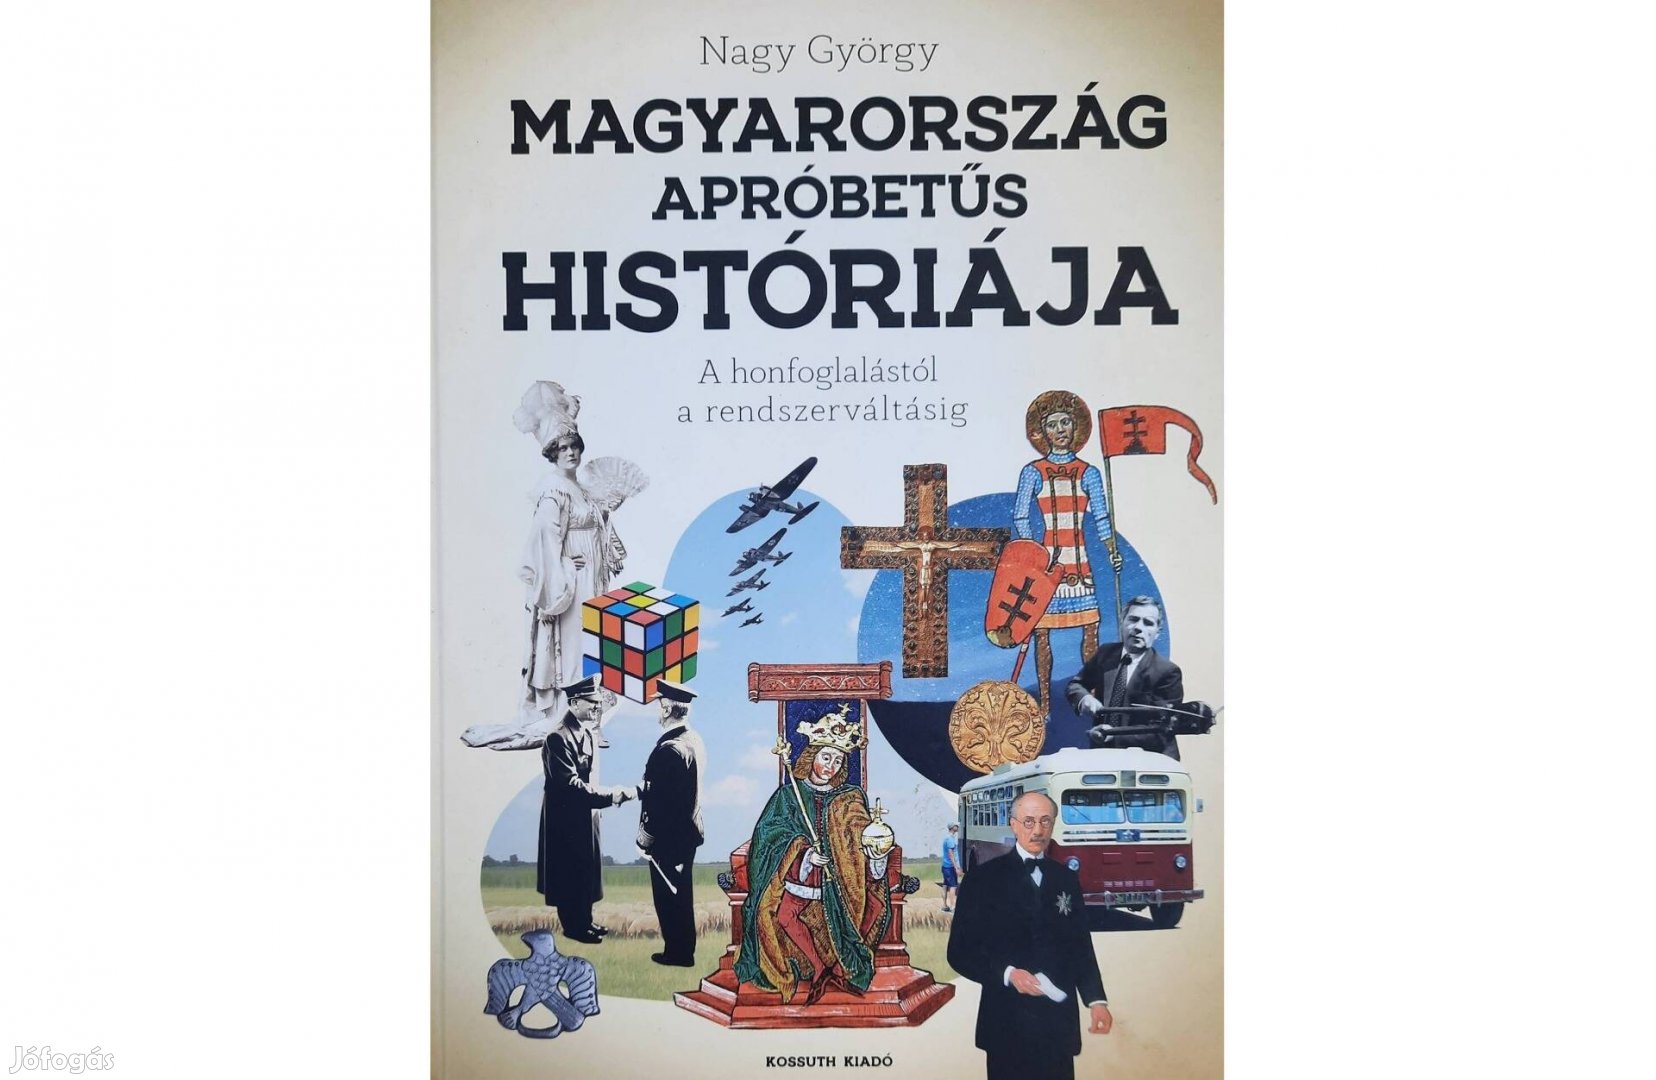 Magyarország apróbetűs históriája című könyv eladó